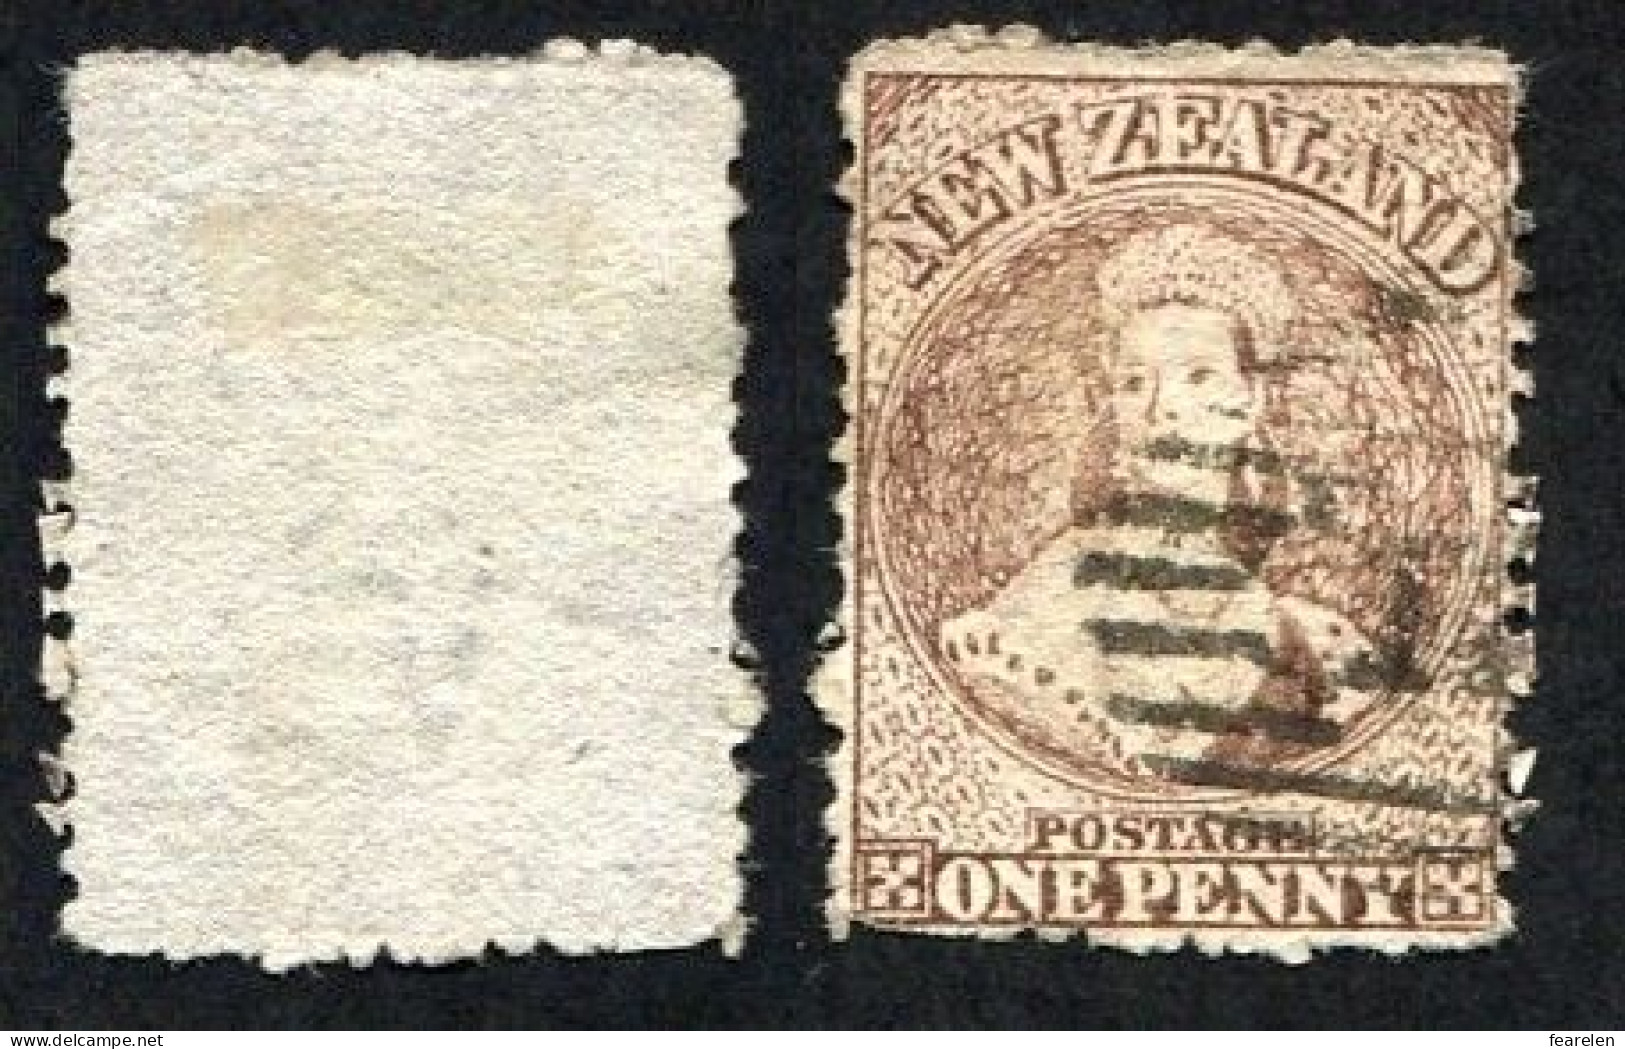 Colonie Anglaise, Nouvelle-Zélande, New-Zeland, Victoria, N°39 Oblitéré, Qualité Beau - Used Stamps